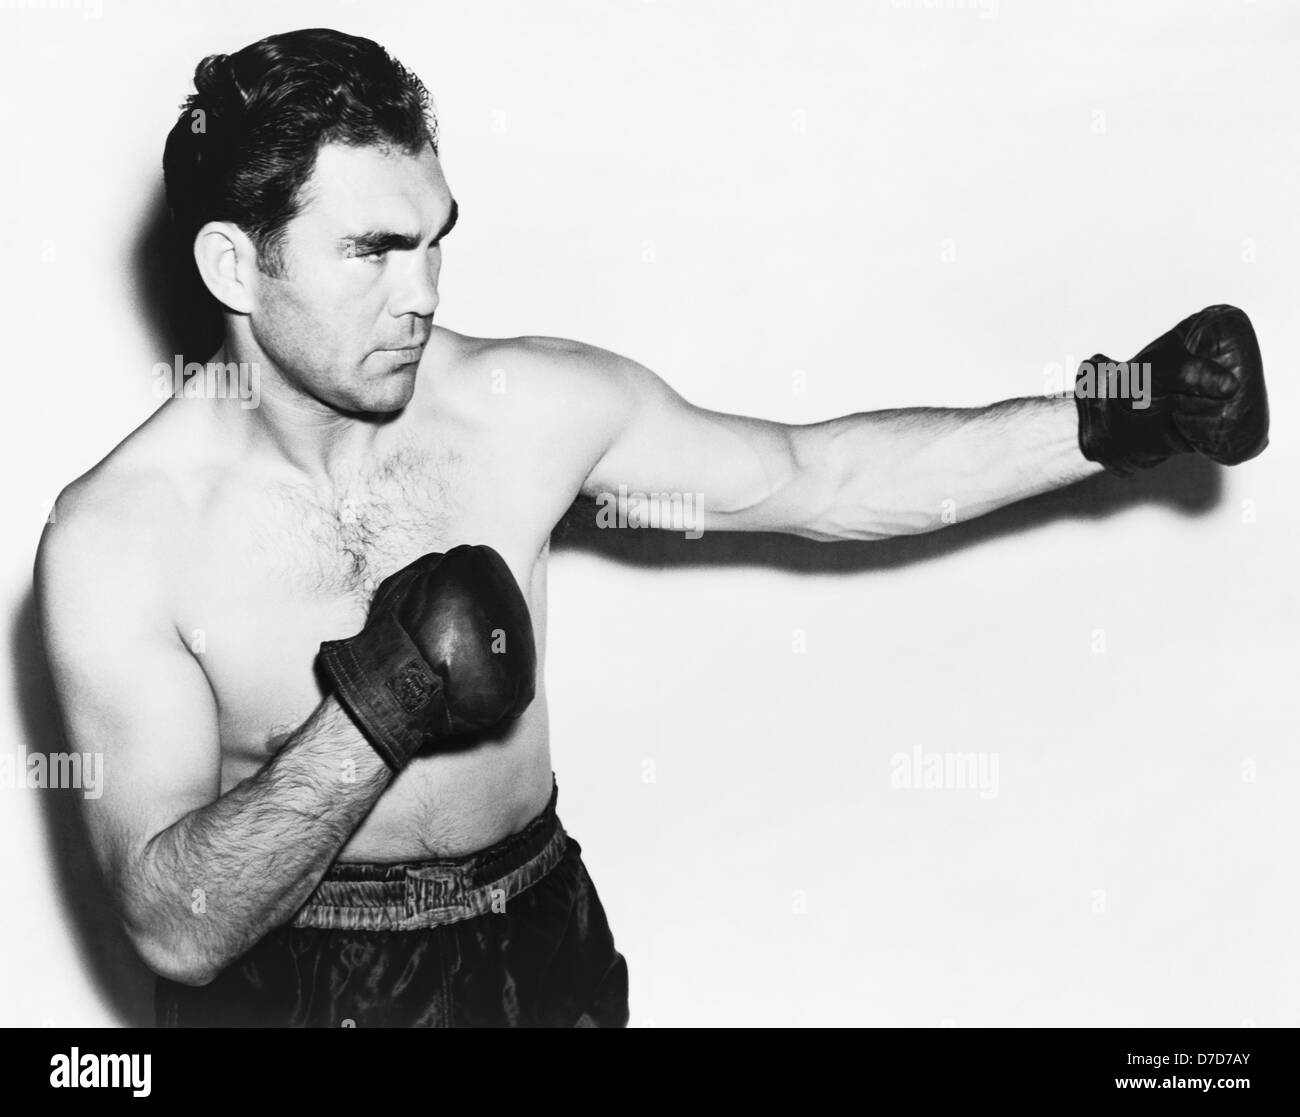 Oldtimer-Foto des deutschen Boxers Max Schmeling (1905 – 2005) – Schmeling, bekannt als „der schwarze Uhlan des Rheins“, war von 1930 bis 1932 Weltmeister im Schwergewicht. Foto ca. 1938. Stockfoto